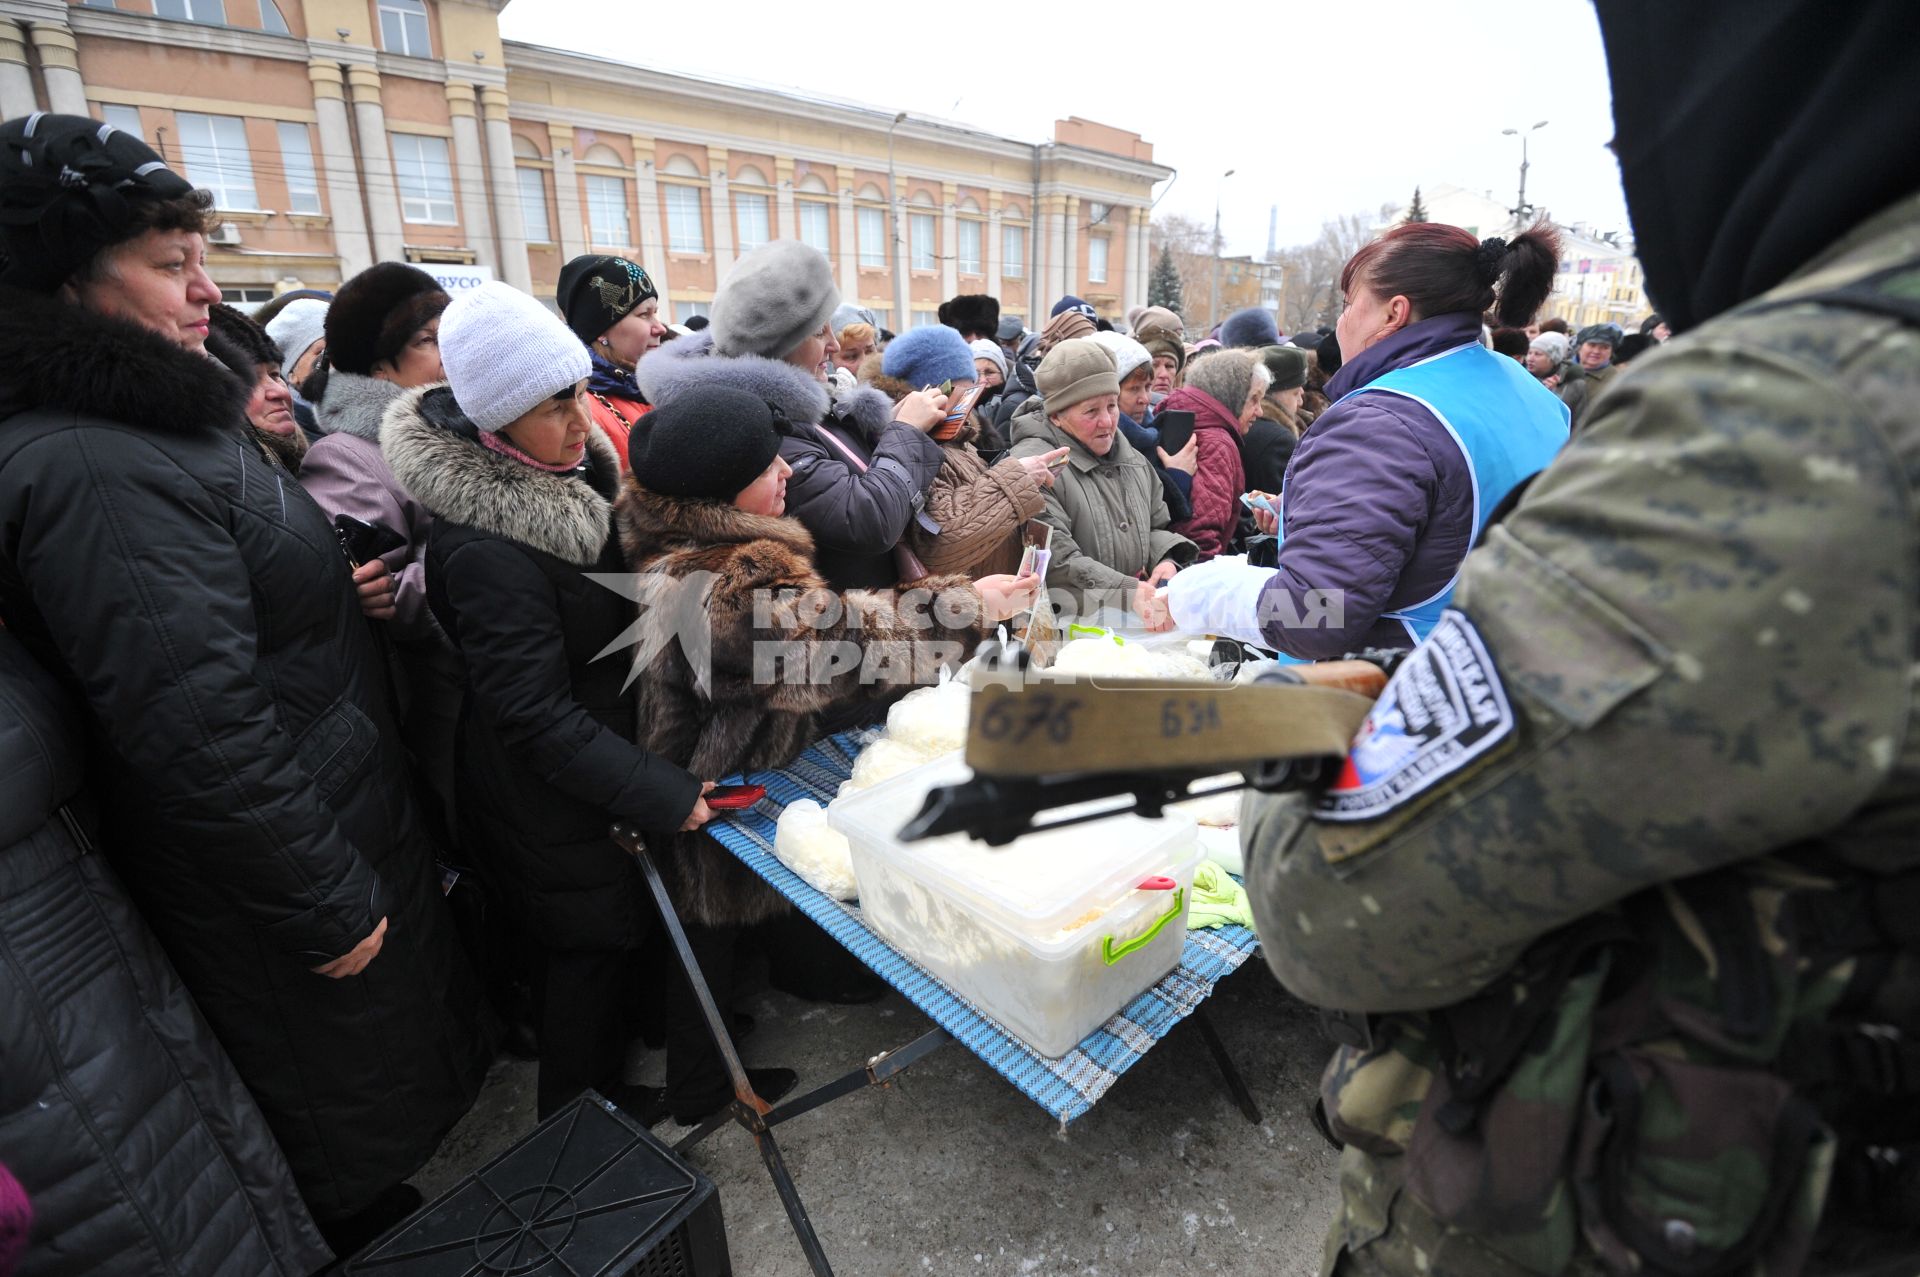 Макеевка. Социальная ярмарка недорогих продуктов, организованная властью ДНР. На снимке: люди стоят в очереди за продуктами.